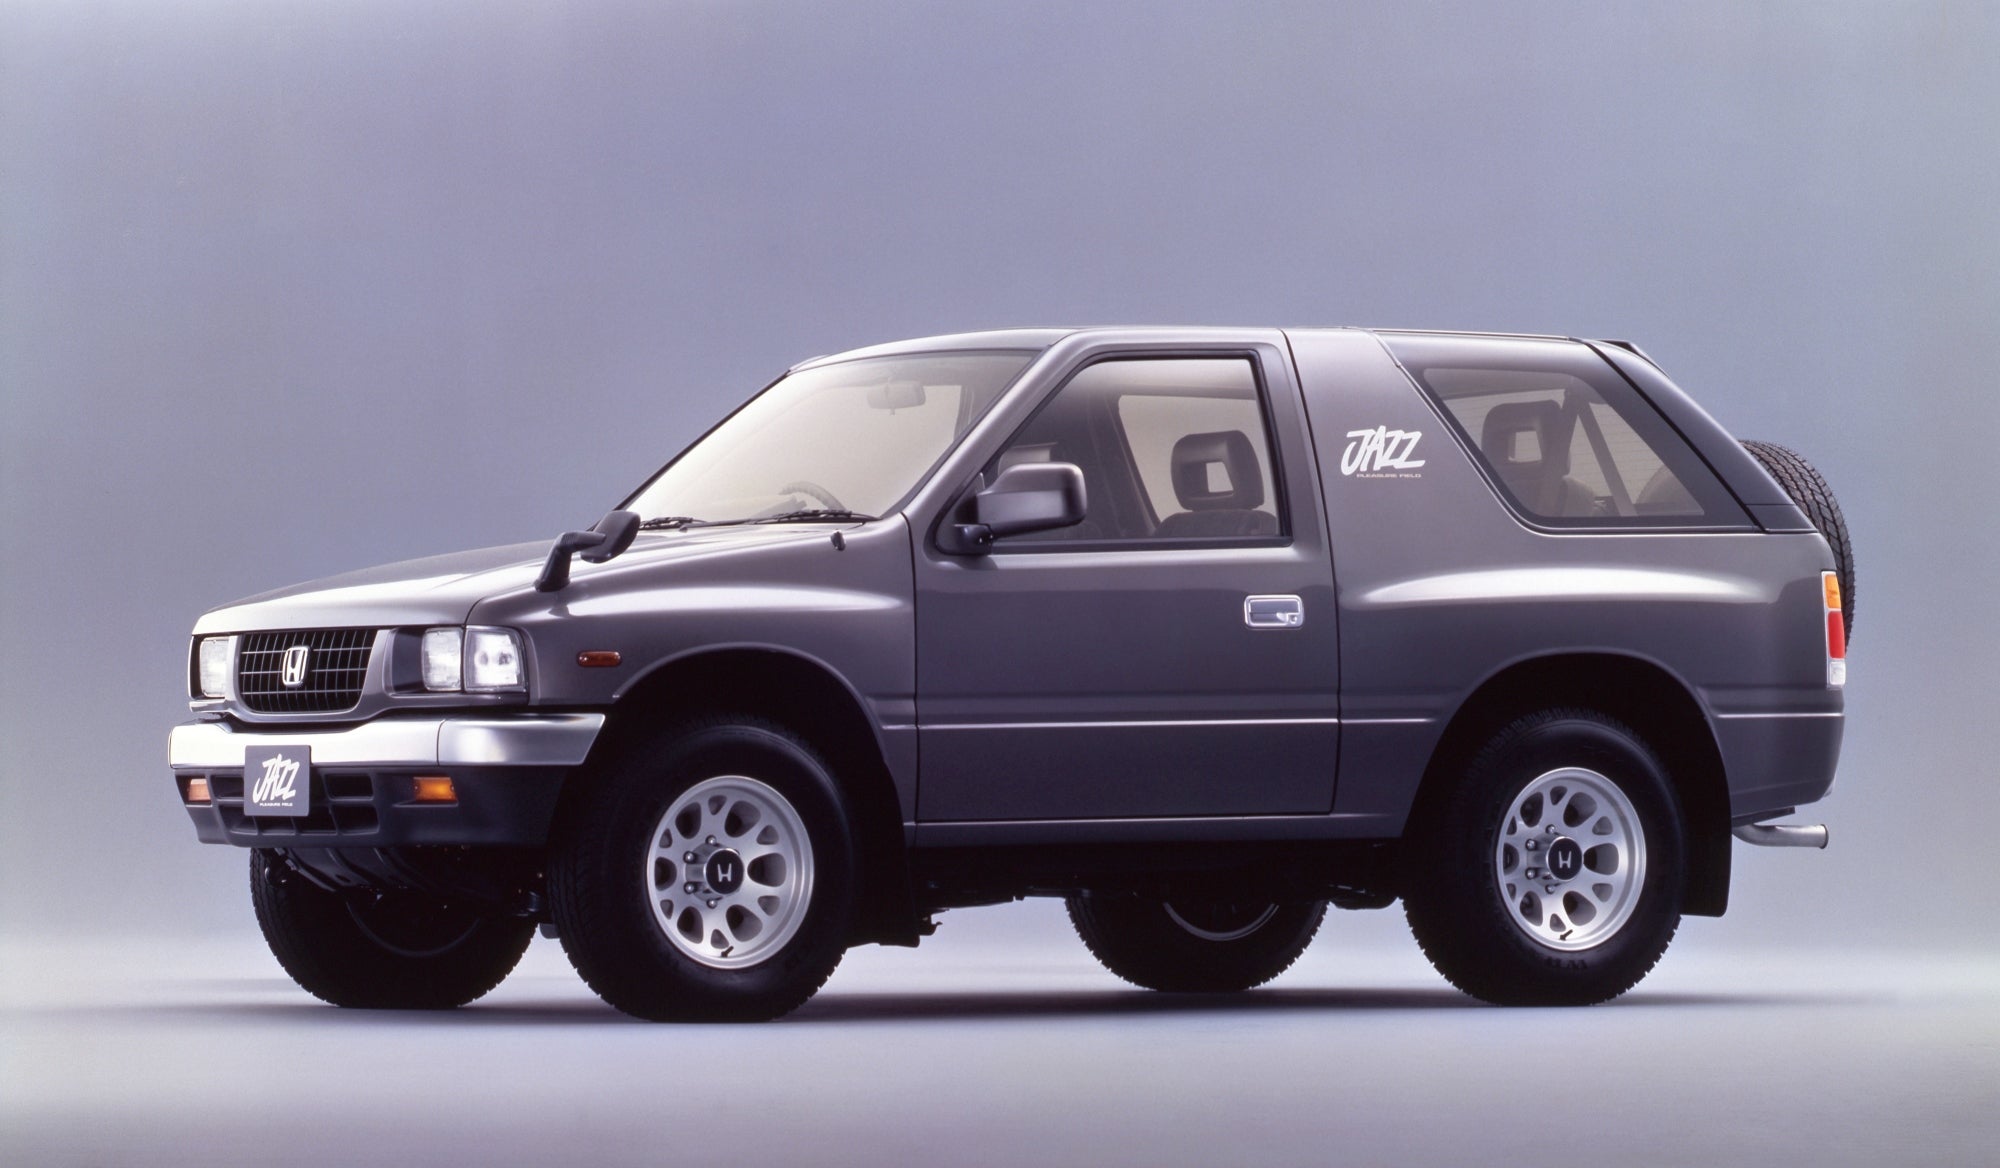 ホンダ・ジャズはいすゞ・ミューのOEM車として、1993年にデビューした